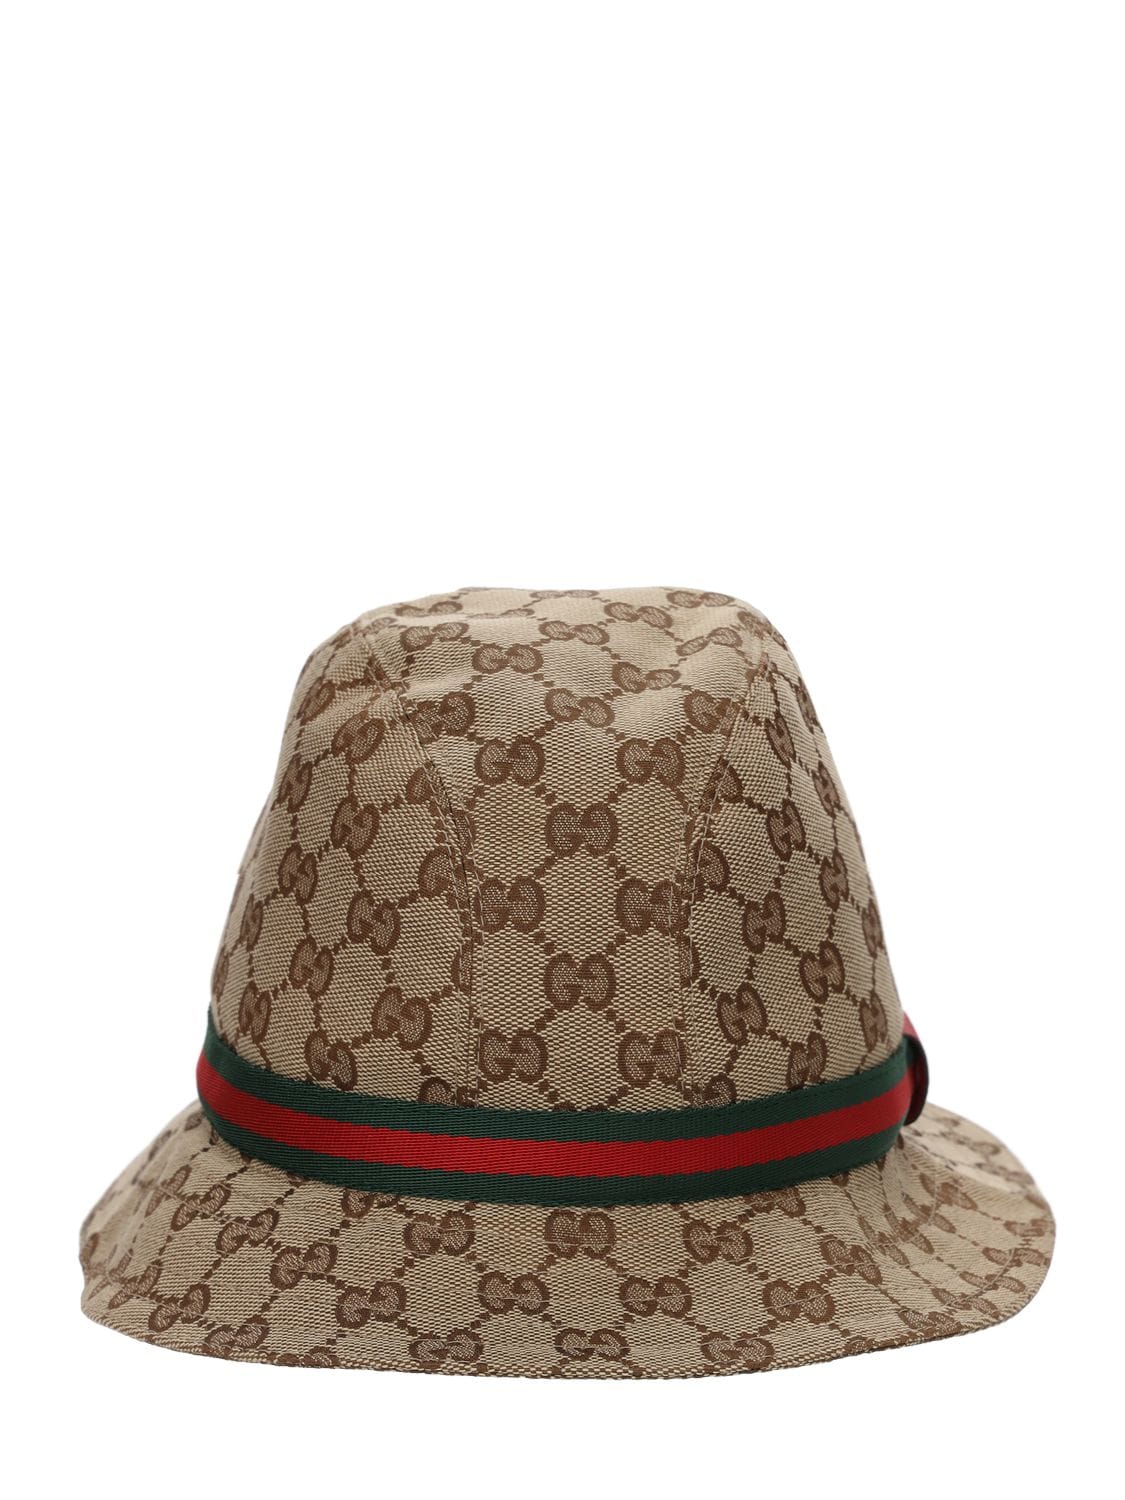 Gucci Babies' Gg Supreme Logo Cotton Blend Bucket Hat In Beige